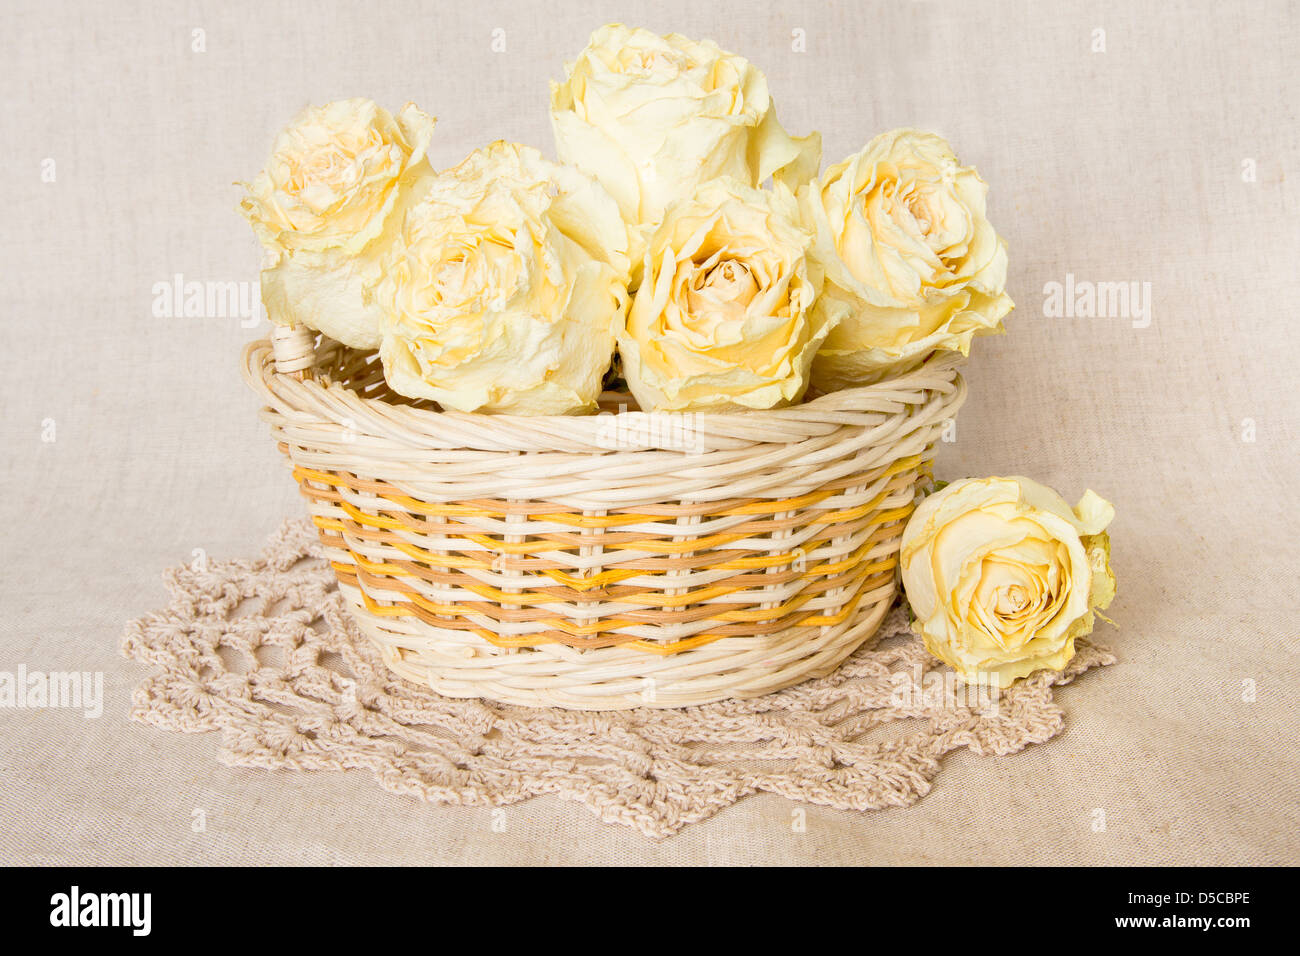 Weiße Rosen im Korb mit gestrickten Deckchen über Leinen Hintergrund getrocknet. Stockfoto